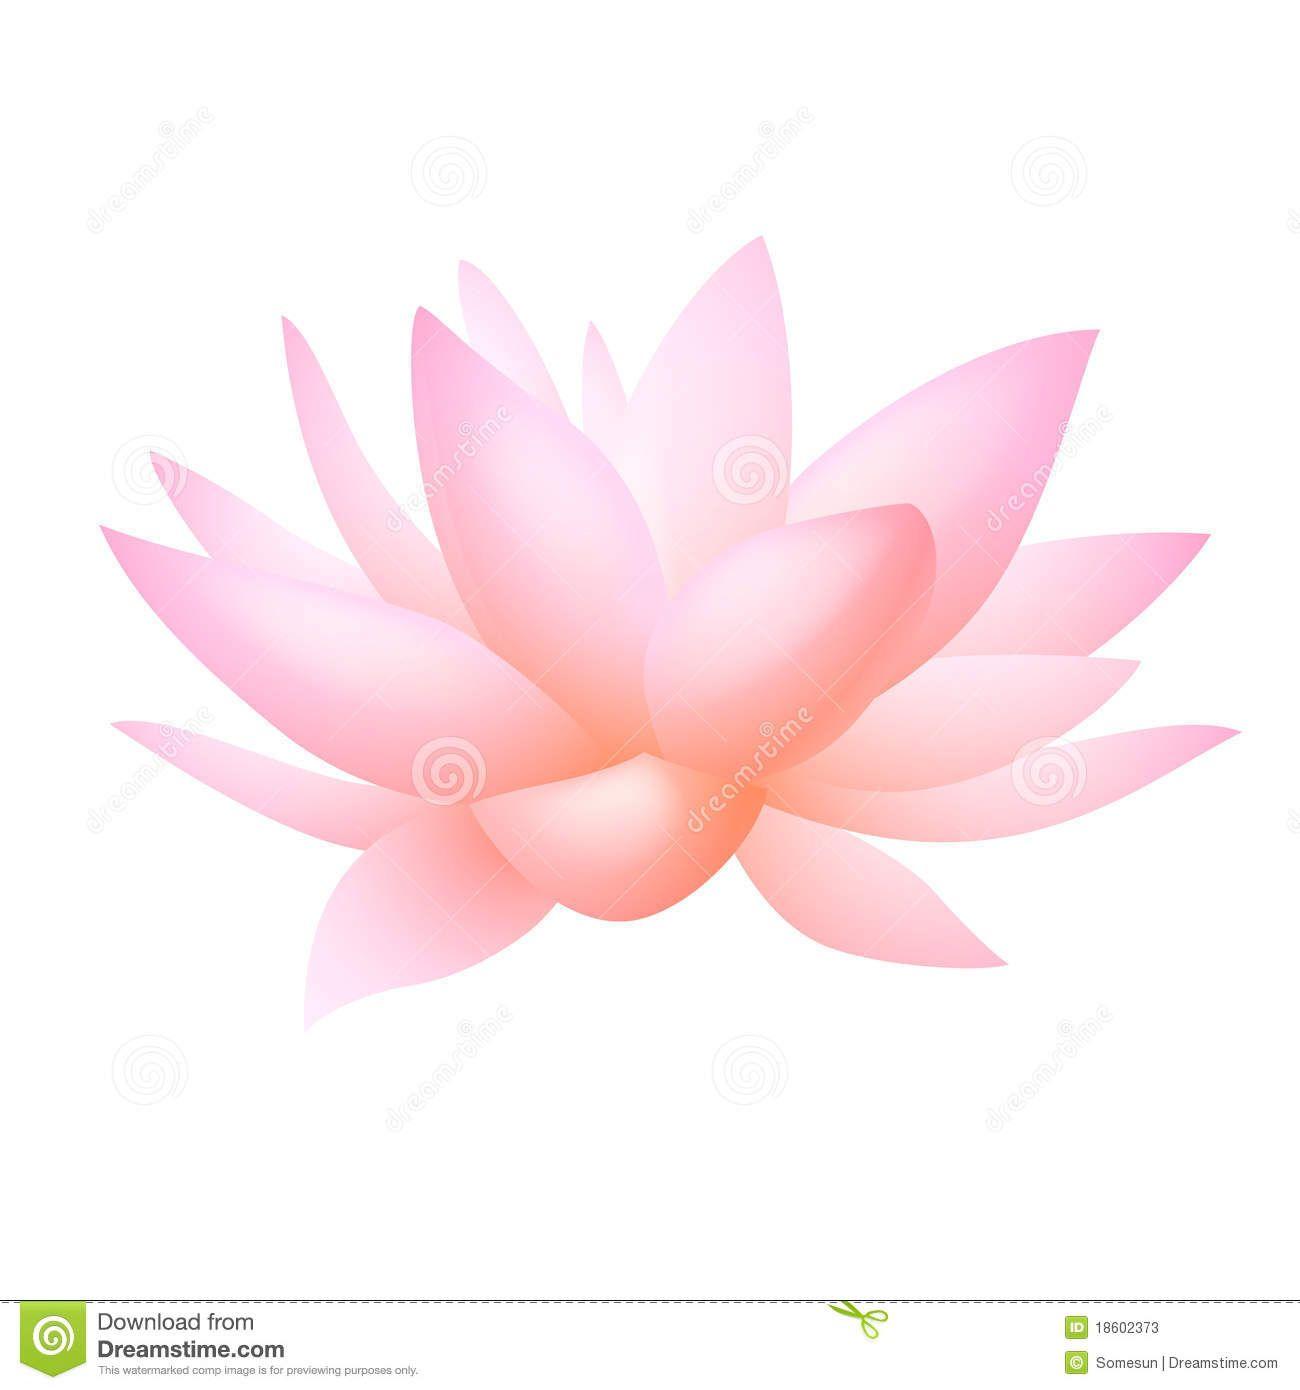 Lotus Flower Vector Art Logo - Lotus Logo Vector Free Download at GetDrawings.com | Free for ...